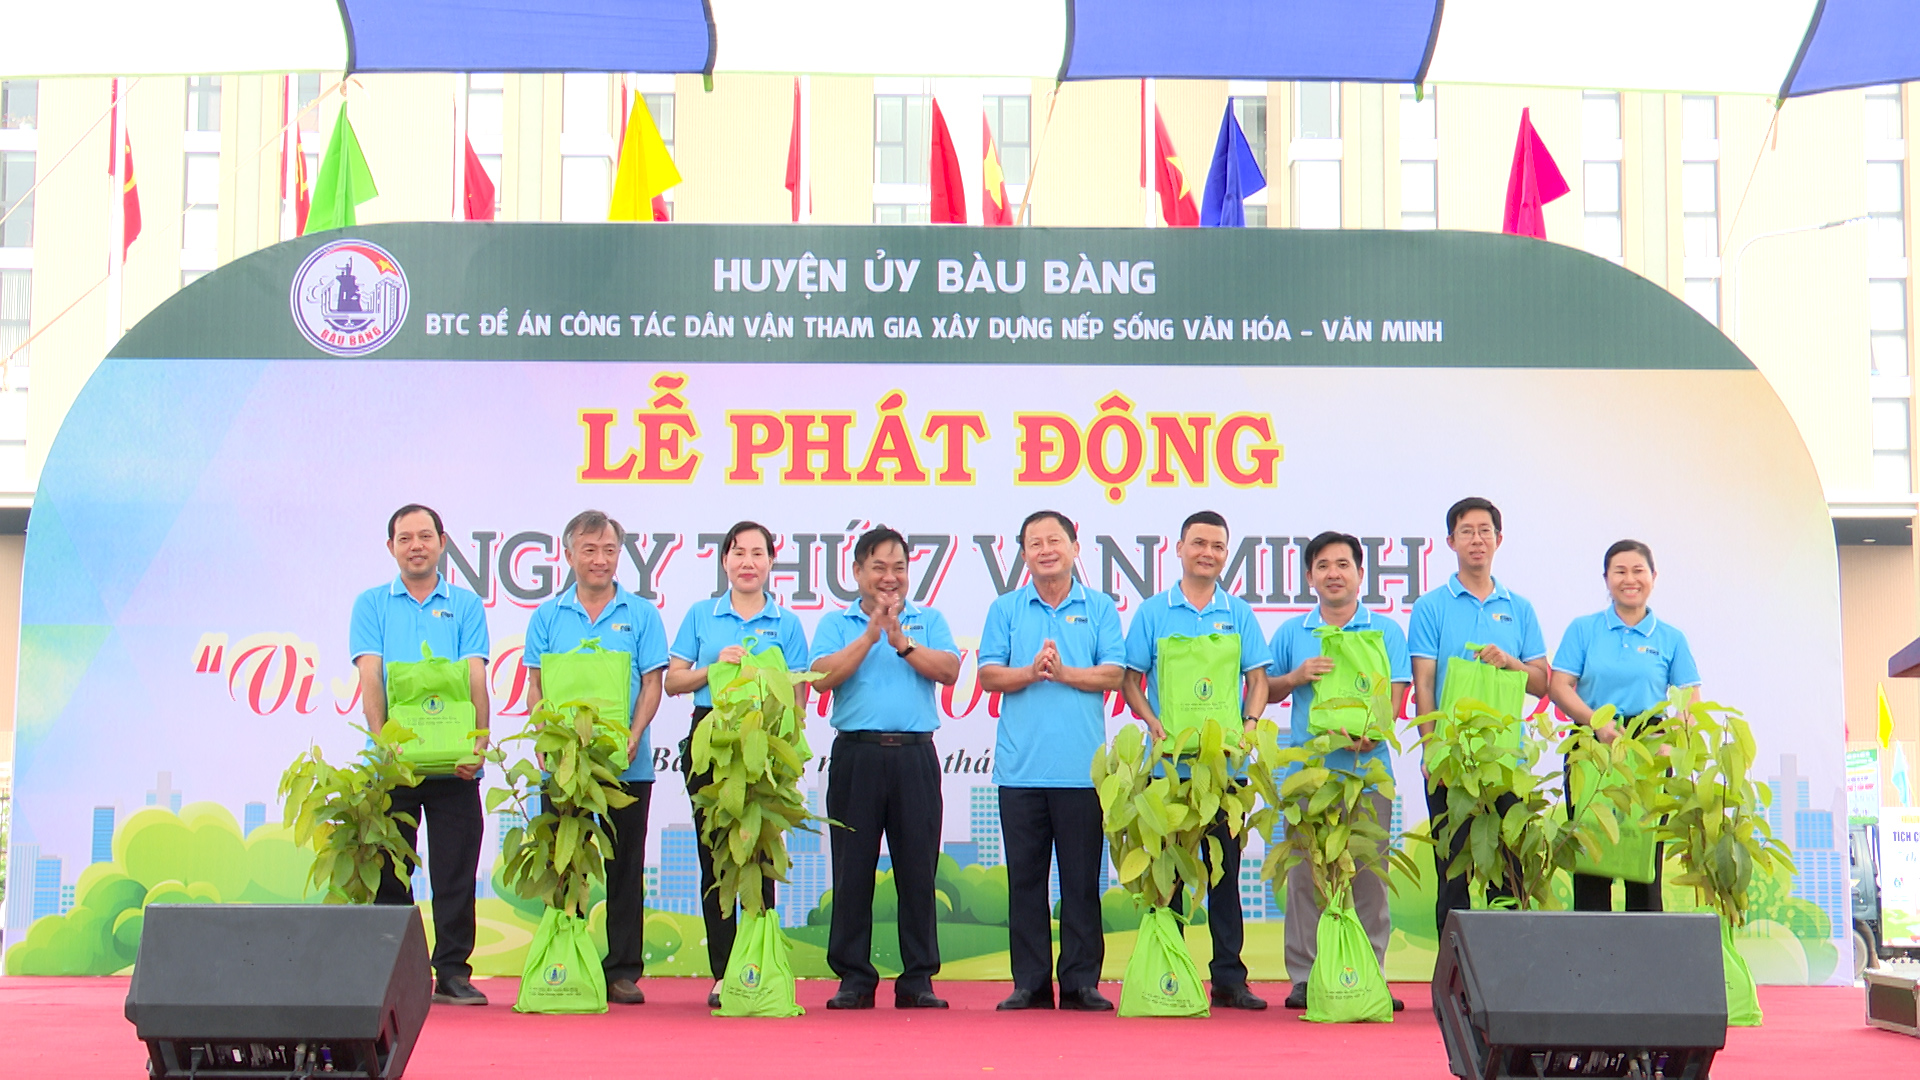 Thị trấn Lai Uyên tham dự lễ phát động và ra quân “Ngày thứ 7 văn minh”